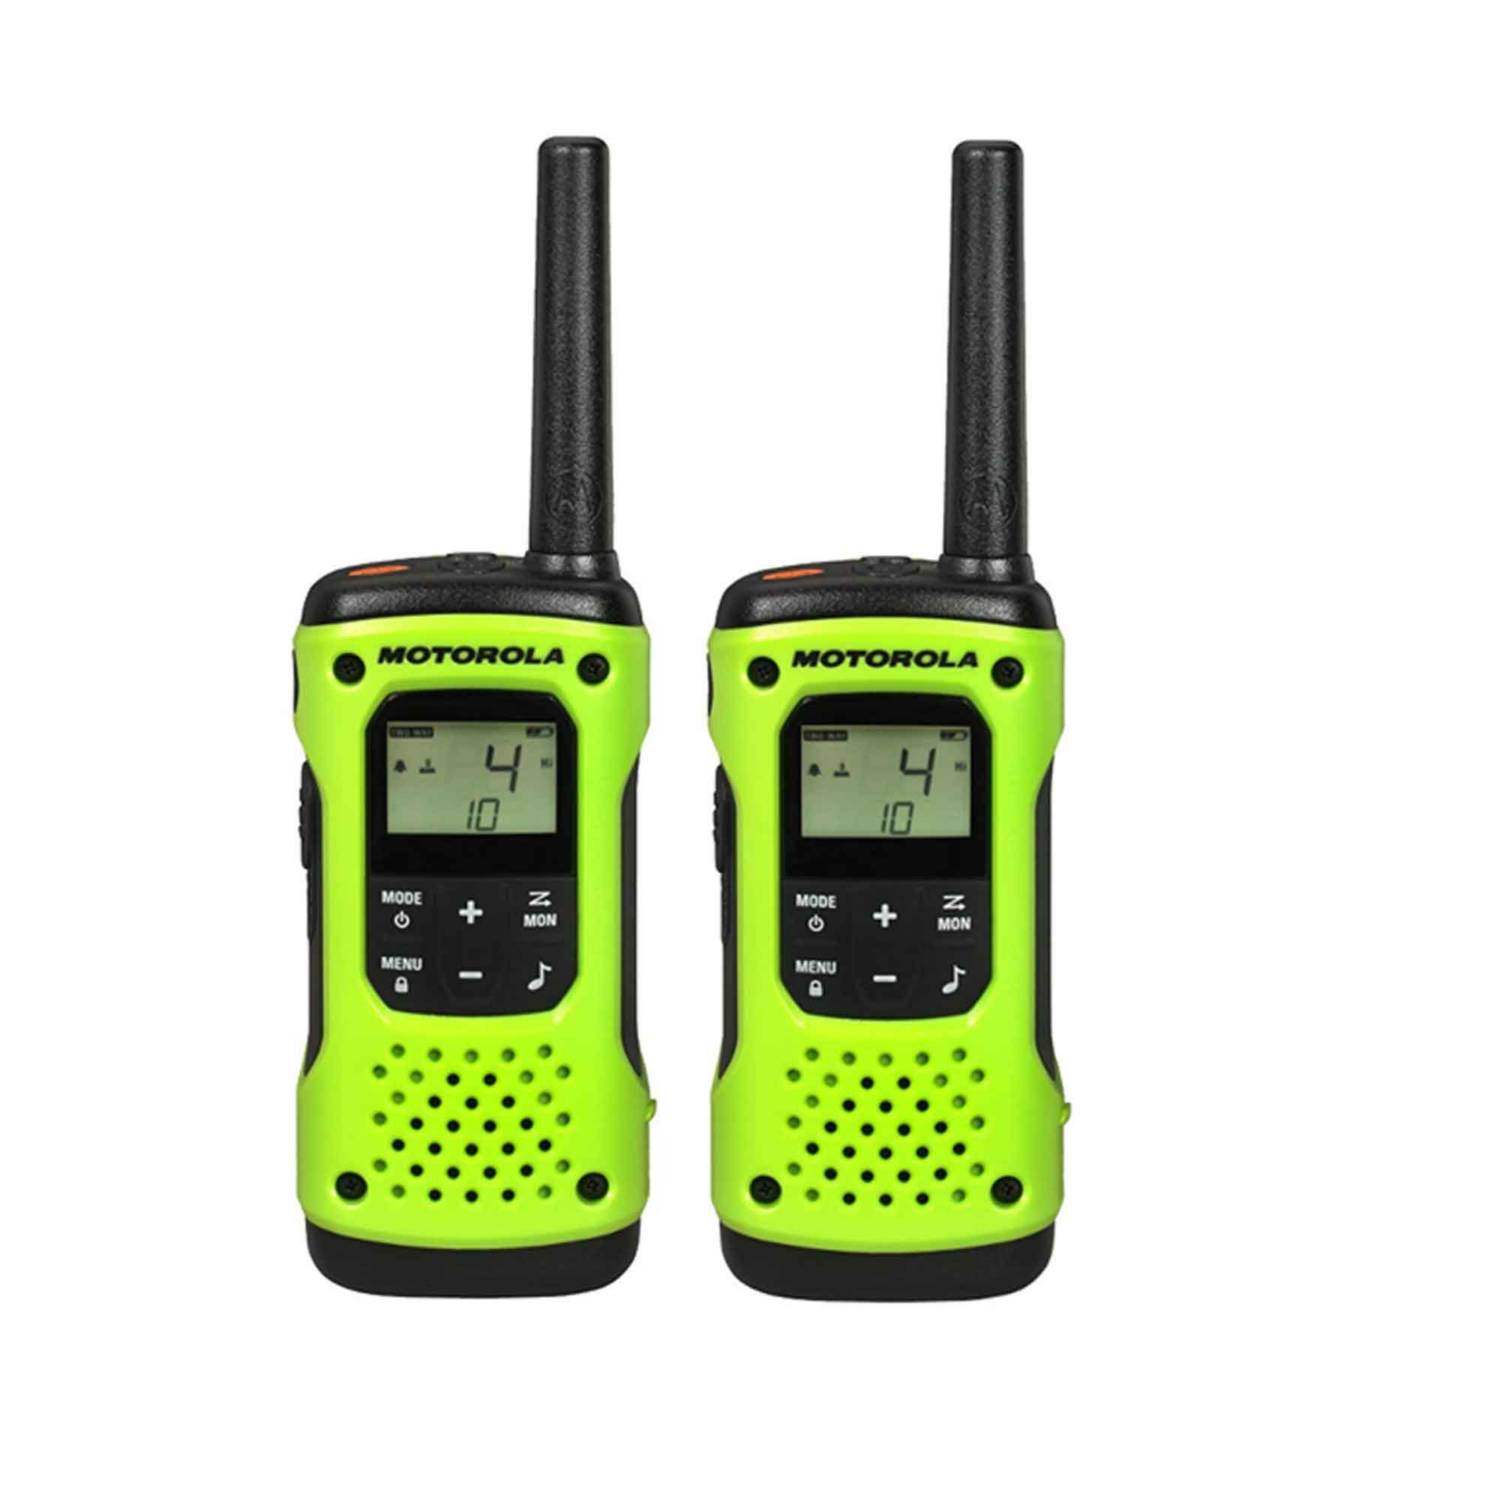 Radio Comunicación Handy Talkabout T600 H2O MOTOROLA | falabella.com